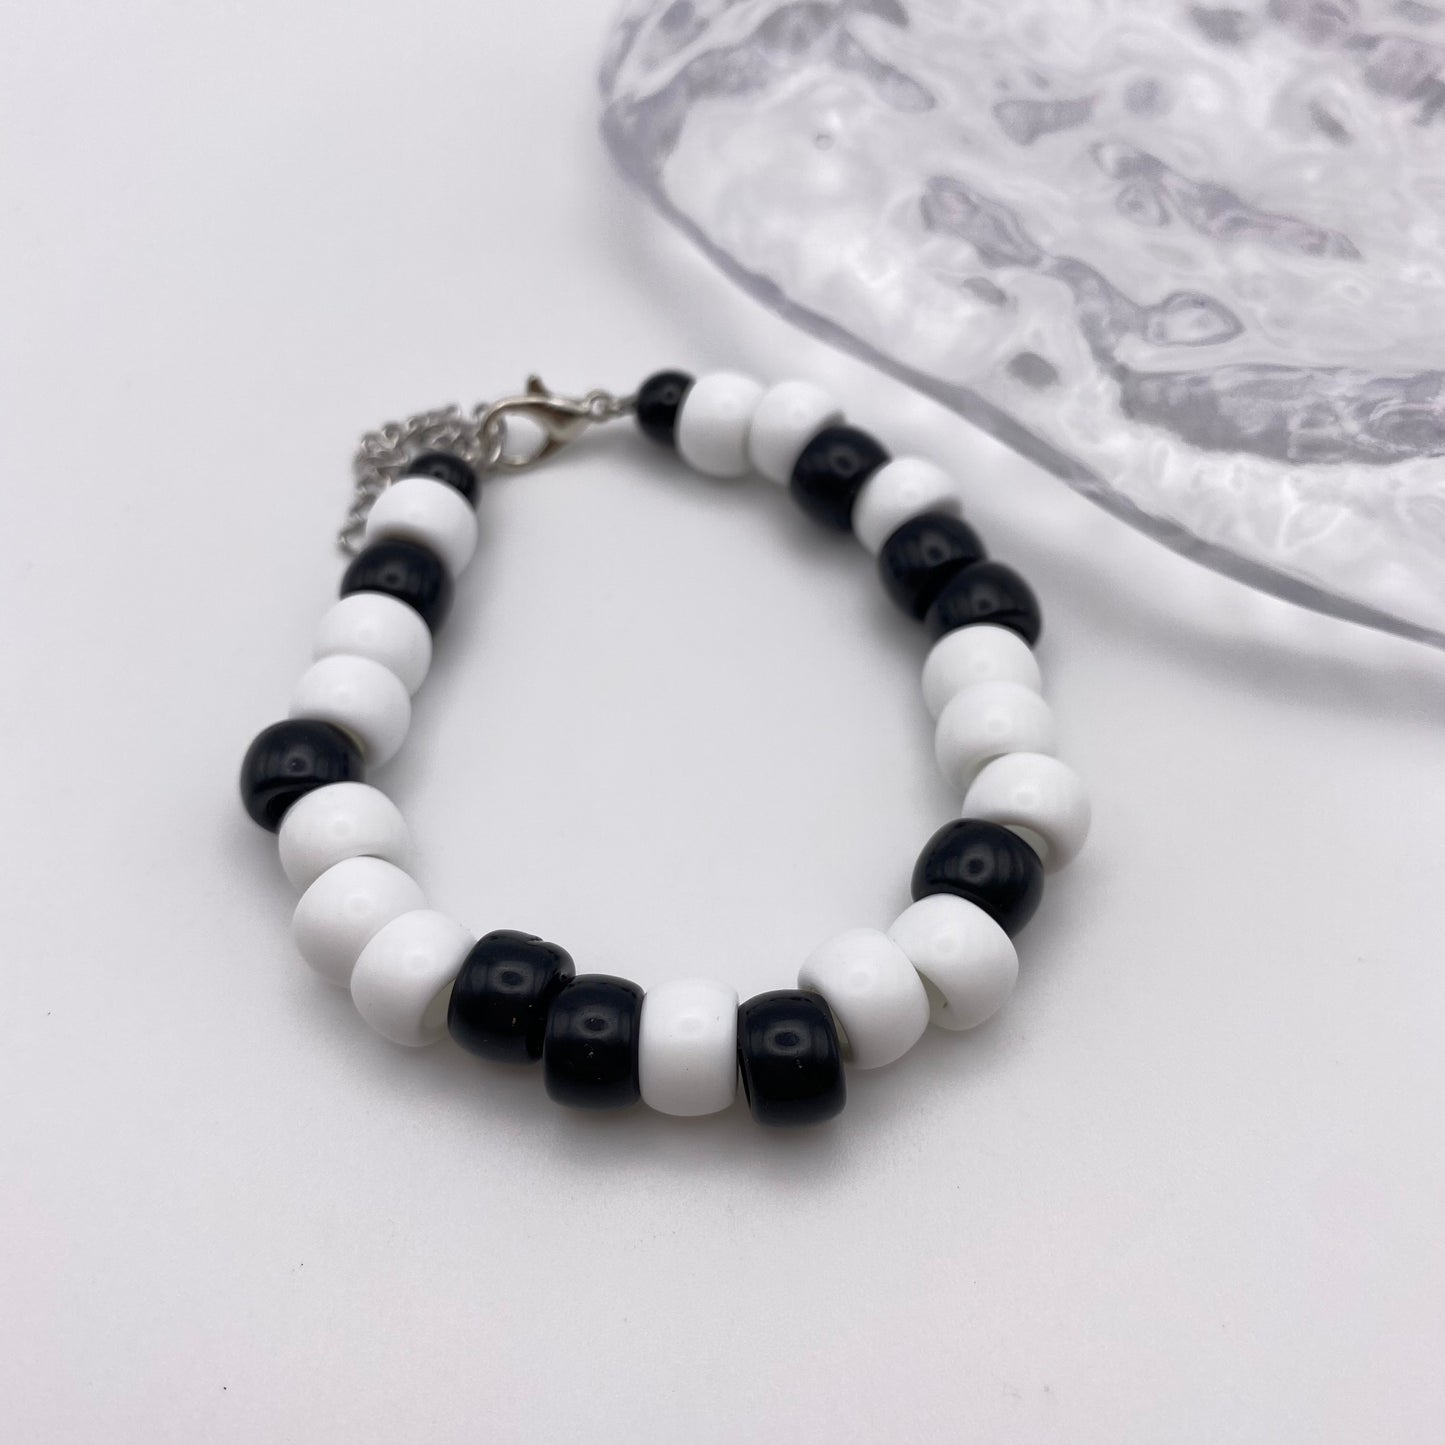 Black and White Beaded Bracelet